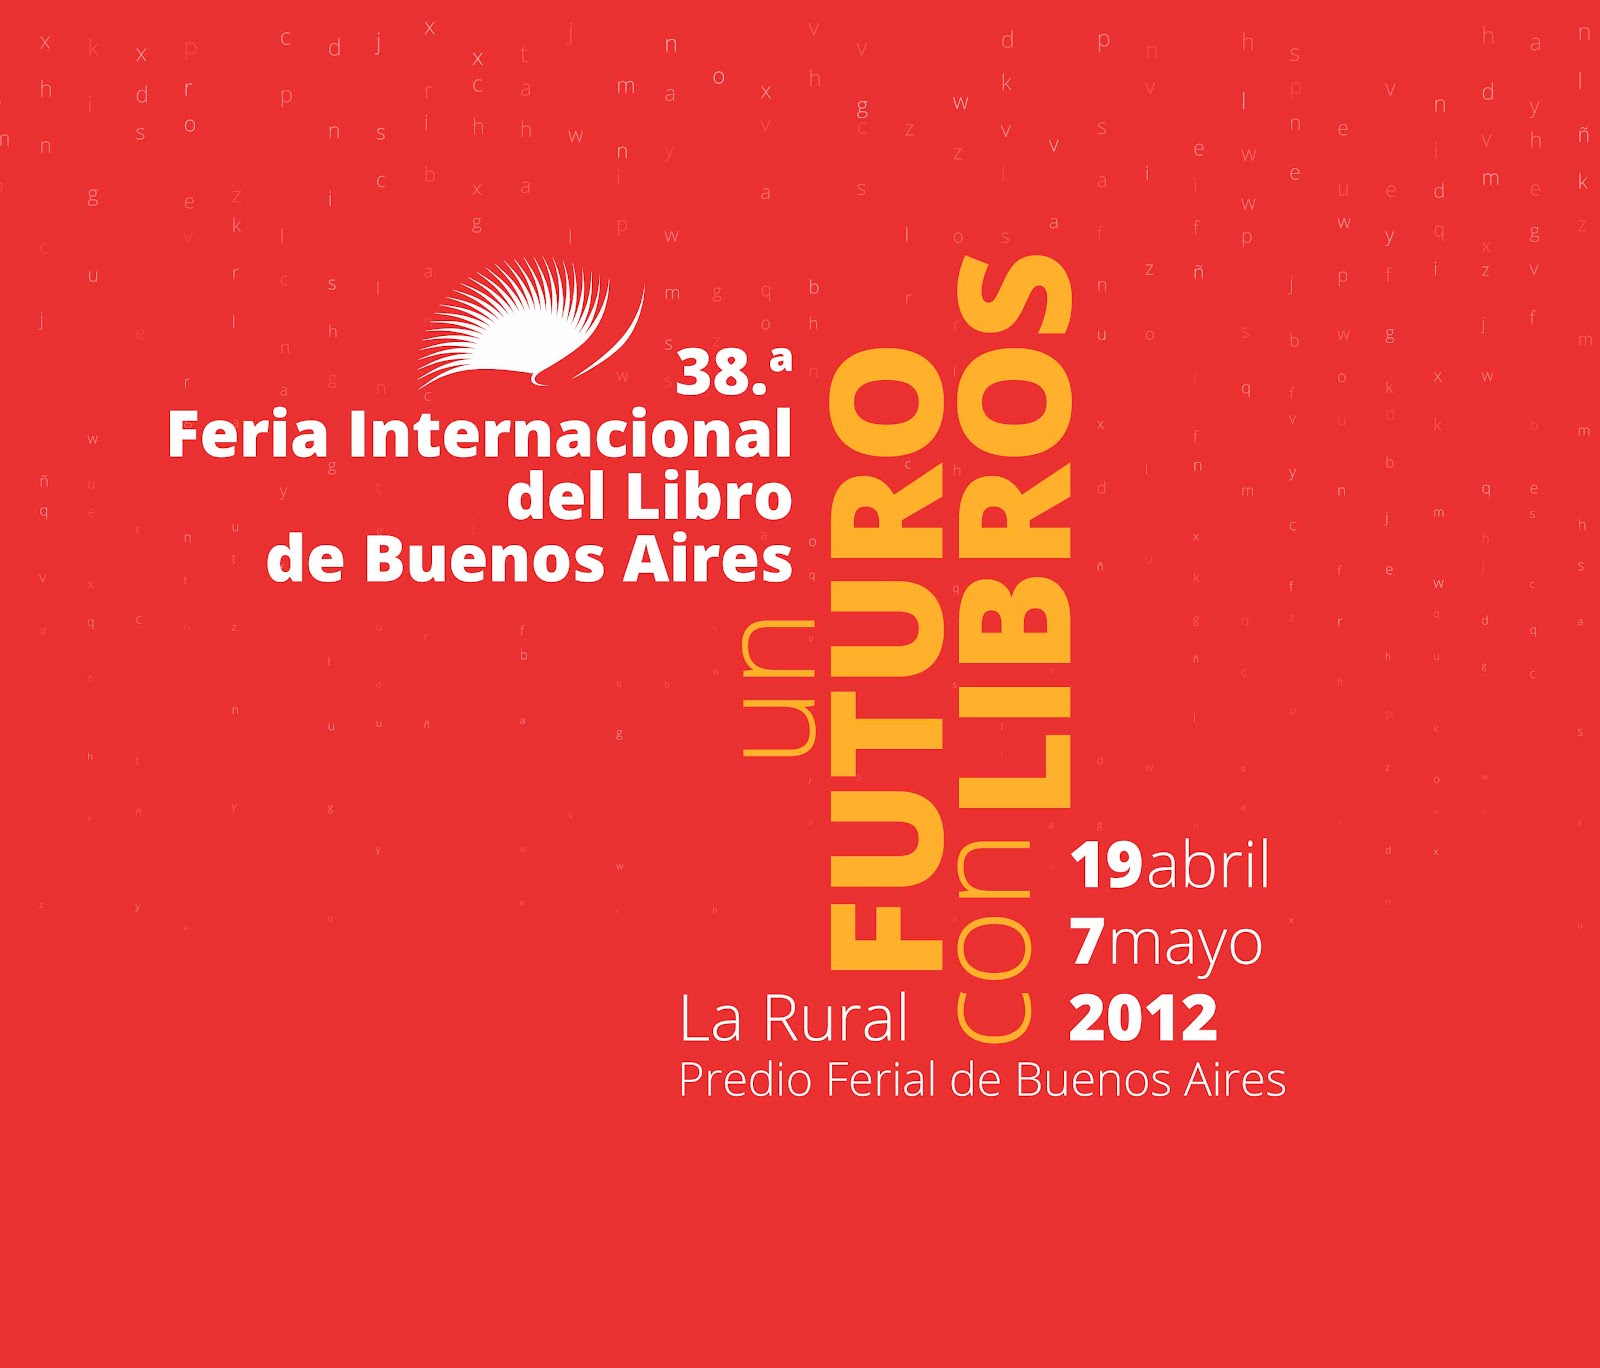 Feria Internacional del Libro - Buenos Aires Logo photo - 1